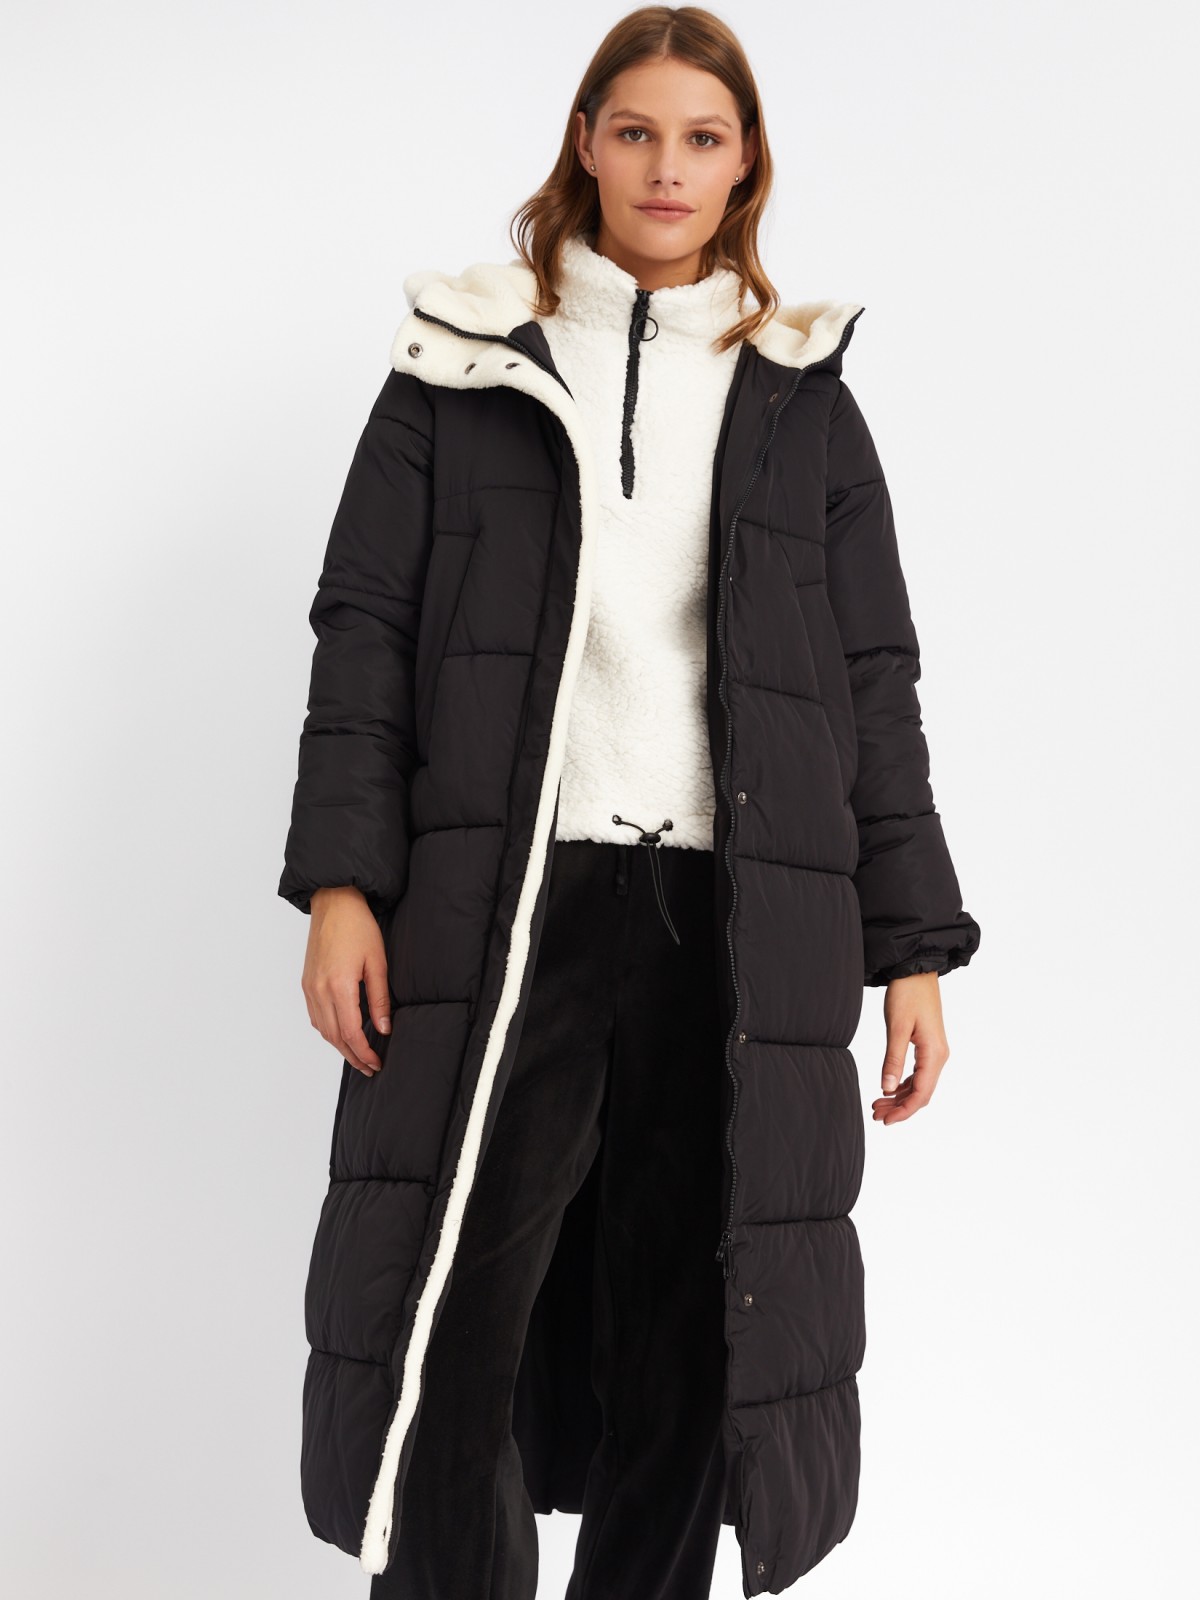 Тёплая куртка-пальто с капюшоном с отделкой из экомеха zolla 023425202144, цвет черный, размер XS